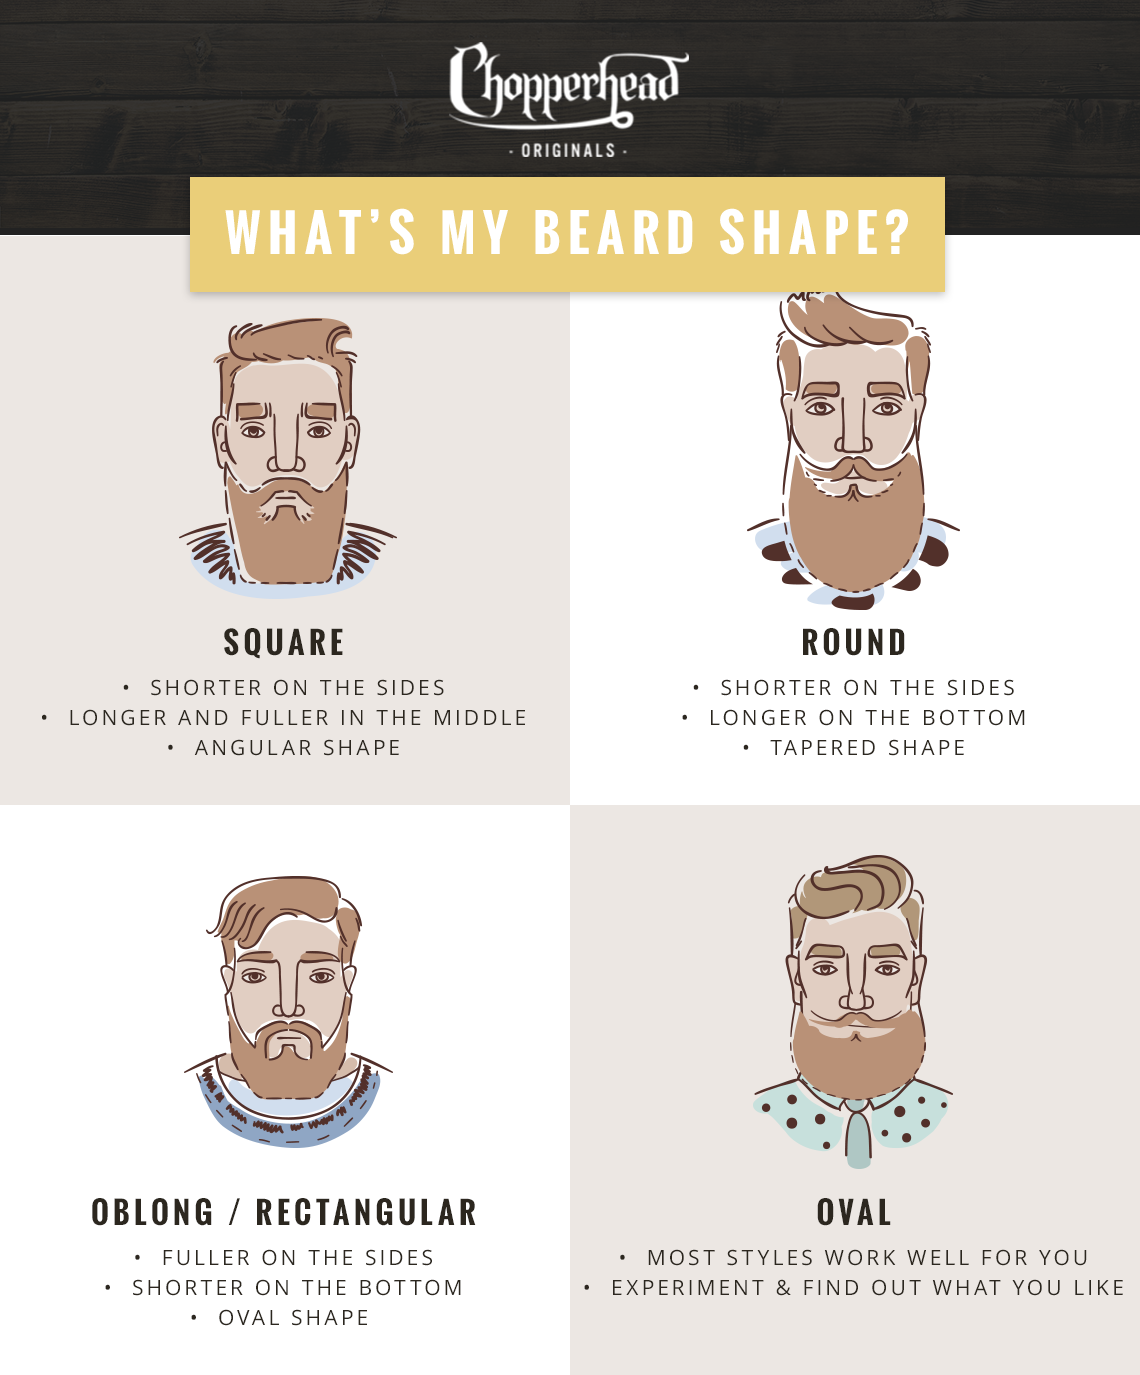 How Should I Shape My Beard? - Chopperhead